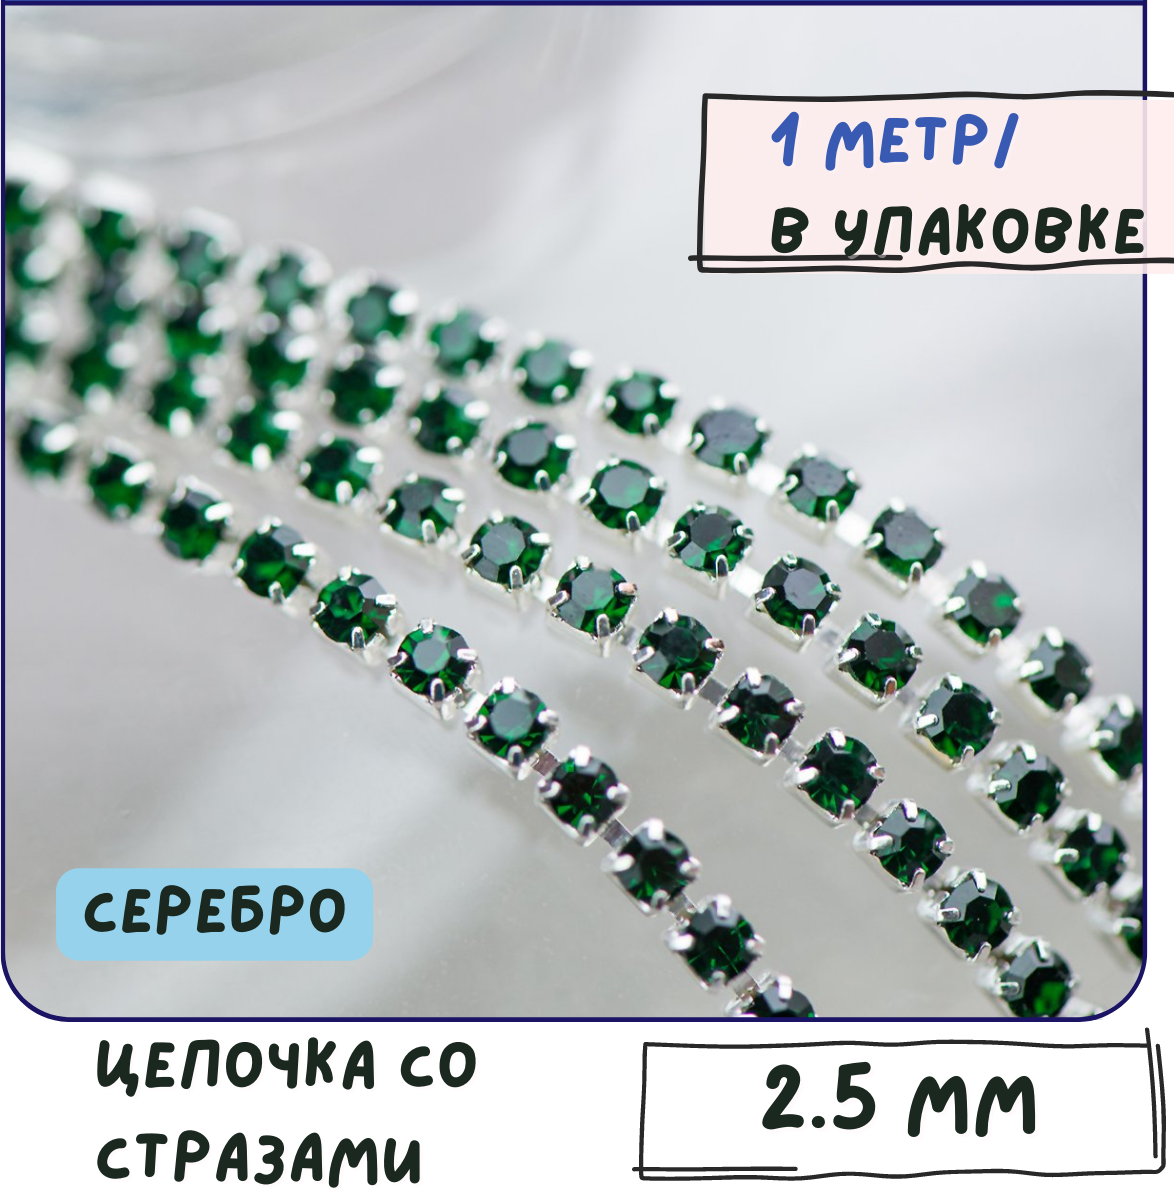 Цепочка со стразами Emerald 1 метр / цепочка для бижутерии /для украшений, сталь цвет серебро, 2.5 мм